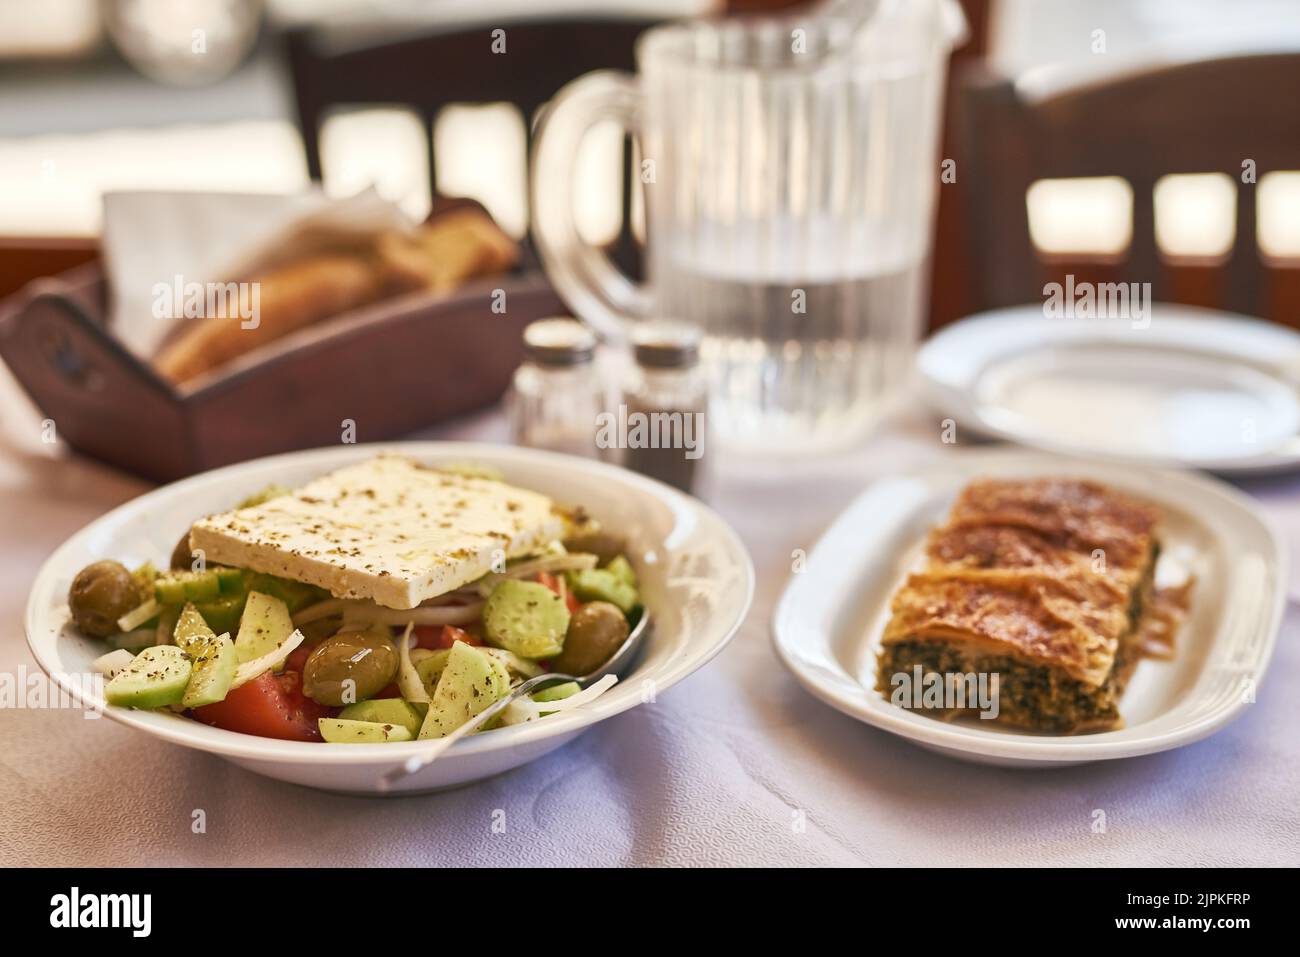 Gesund kann auch lecker aussehen und sein. Ein köstlicher Salat auf einem Teller ohne Menschen. Stockfoto